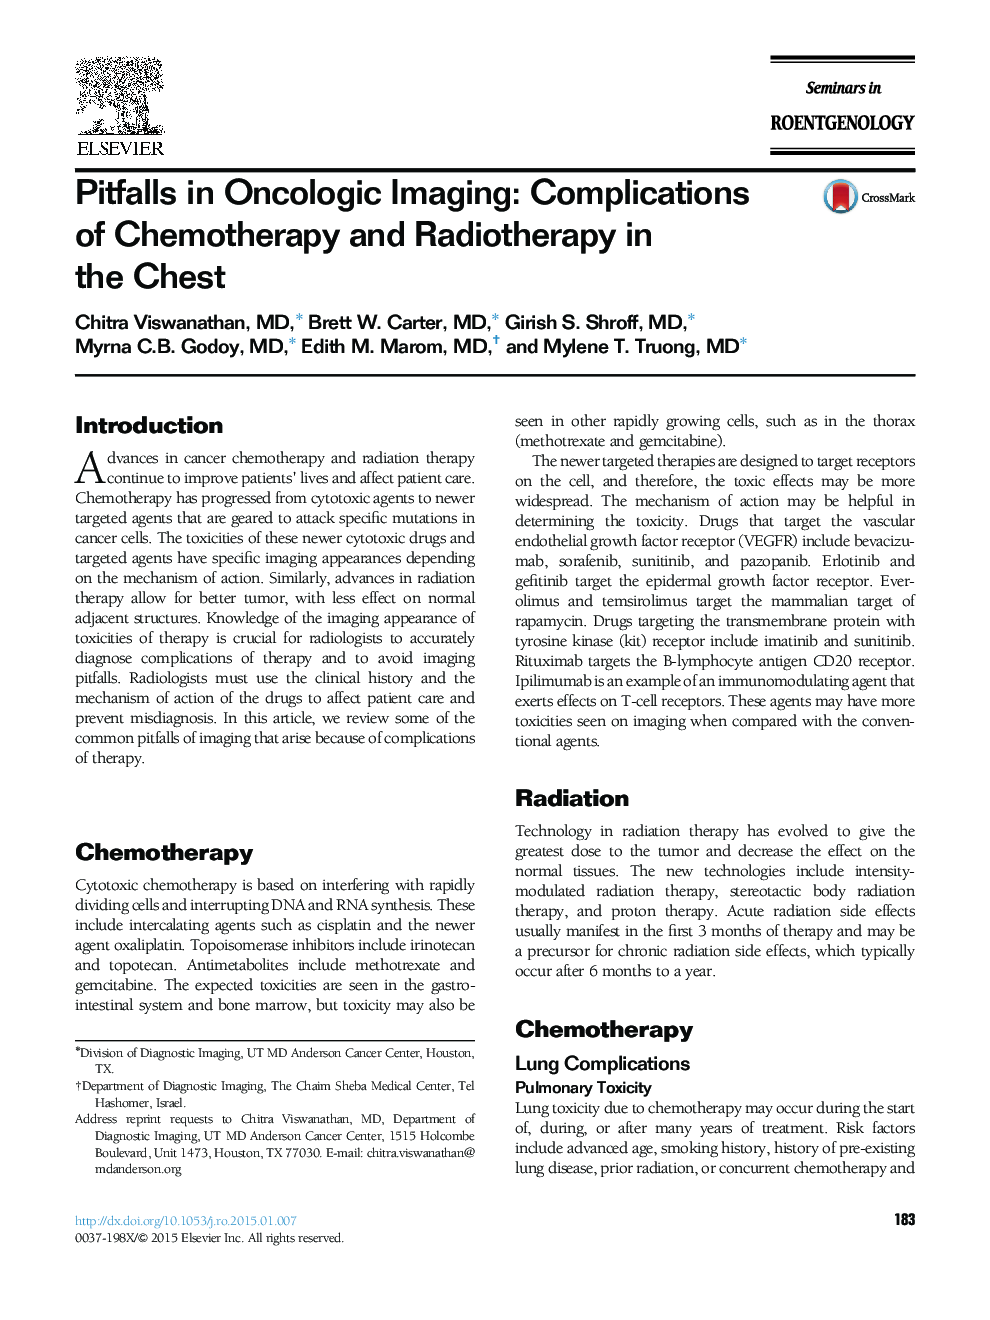 مشکلات در تصویربرداری انکولوژیک: عوارض شیمی درمانی و رادیوتراپی در قفسه سینه 